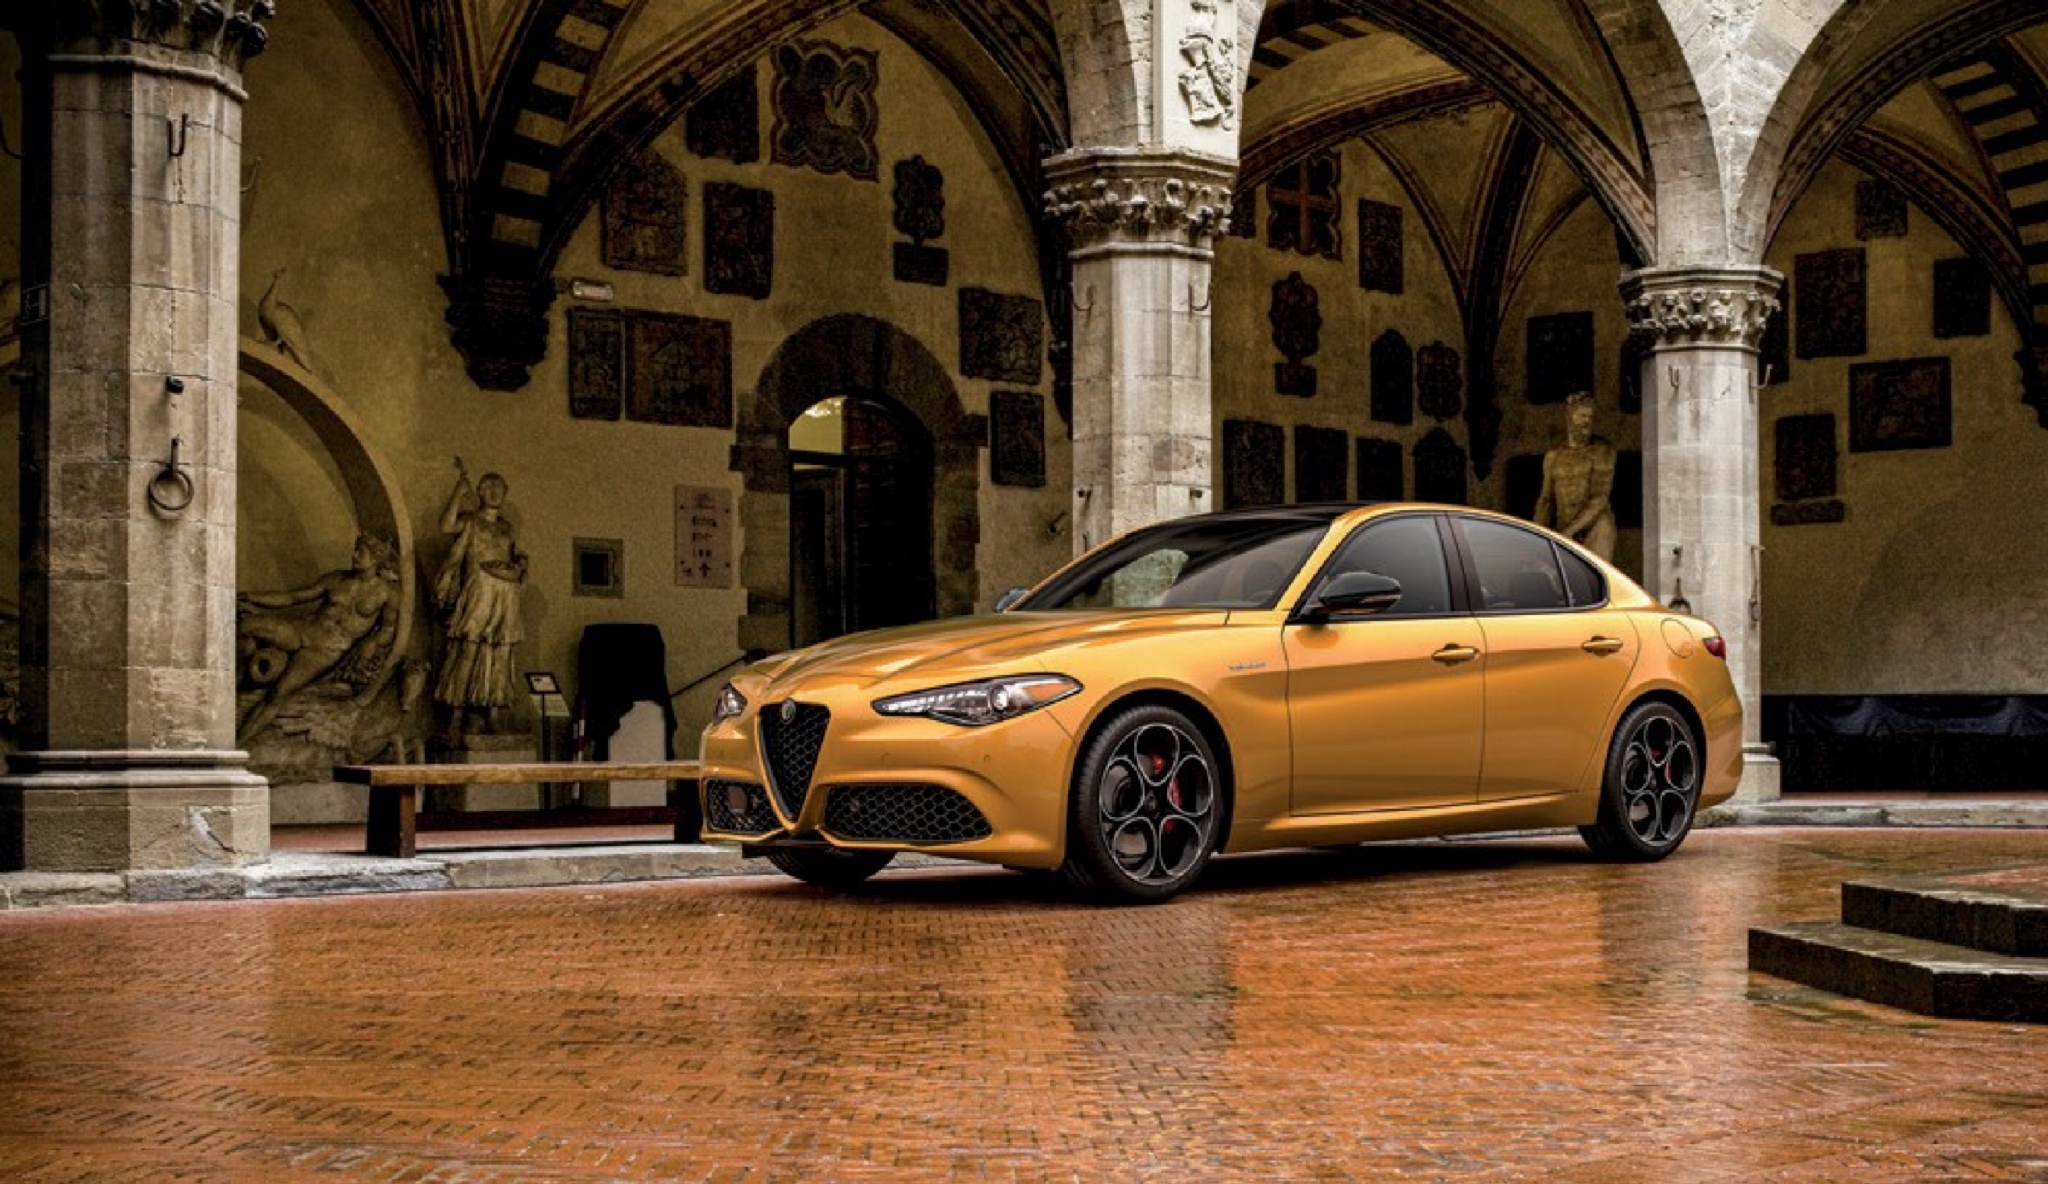 阿尔法·罗密欧Giulia正式上市 37.98万元起售